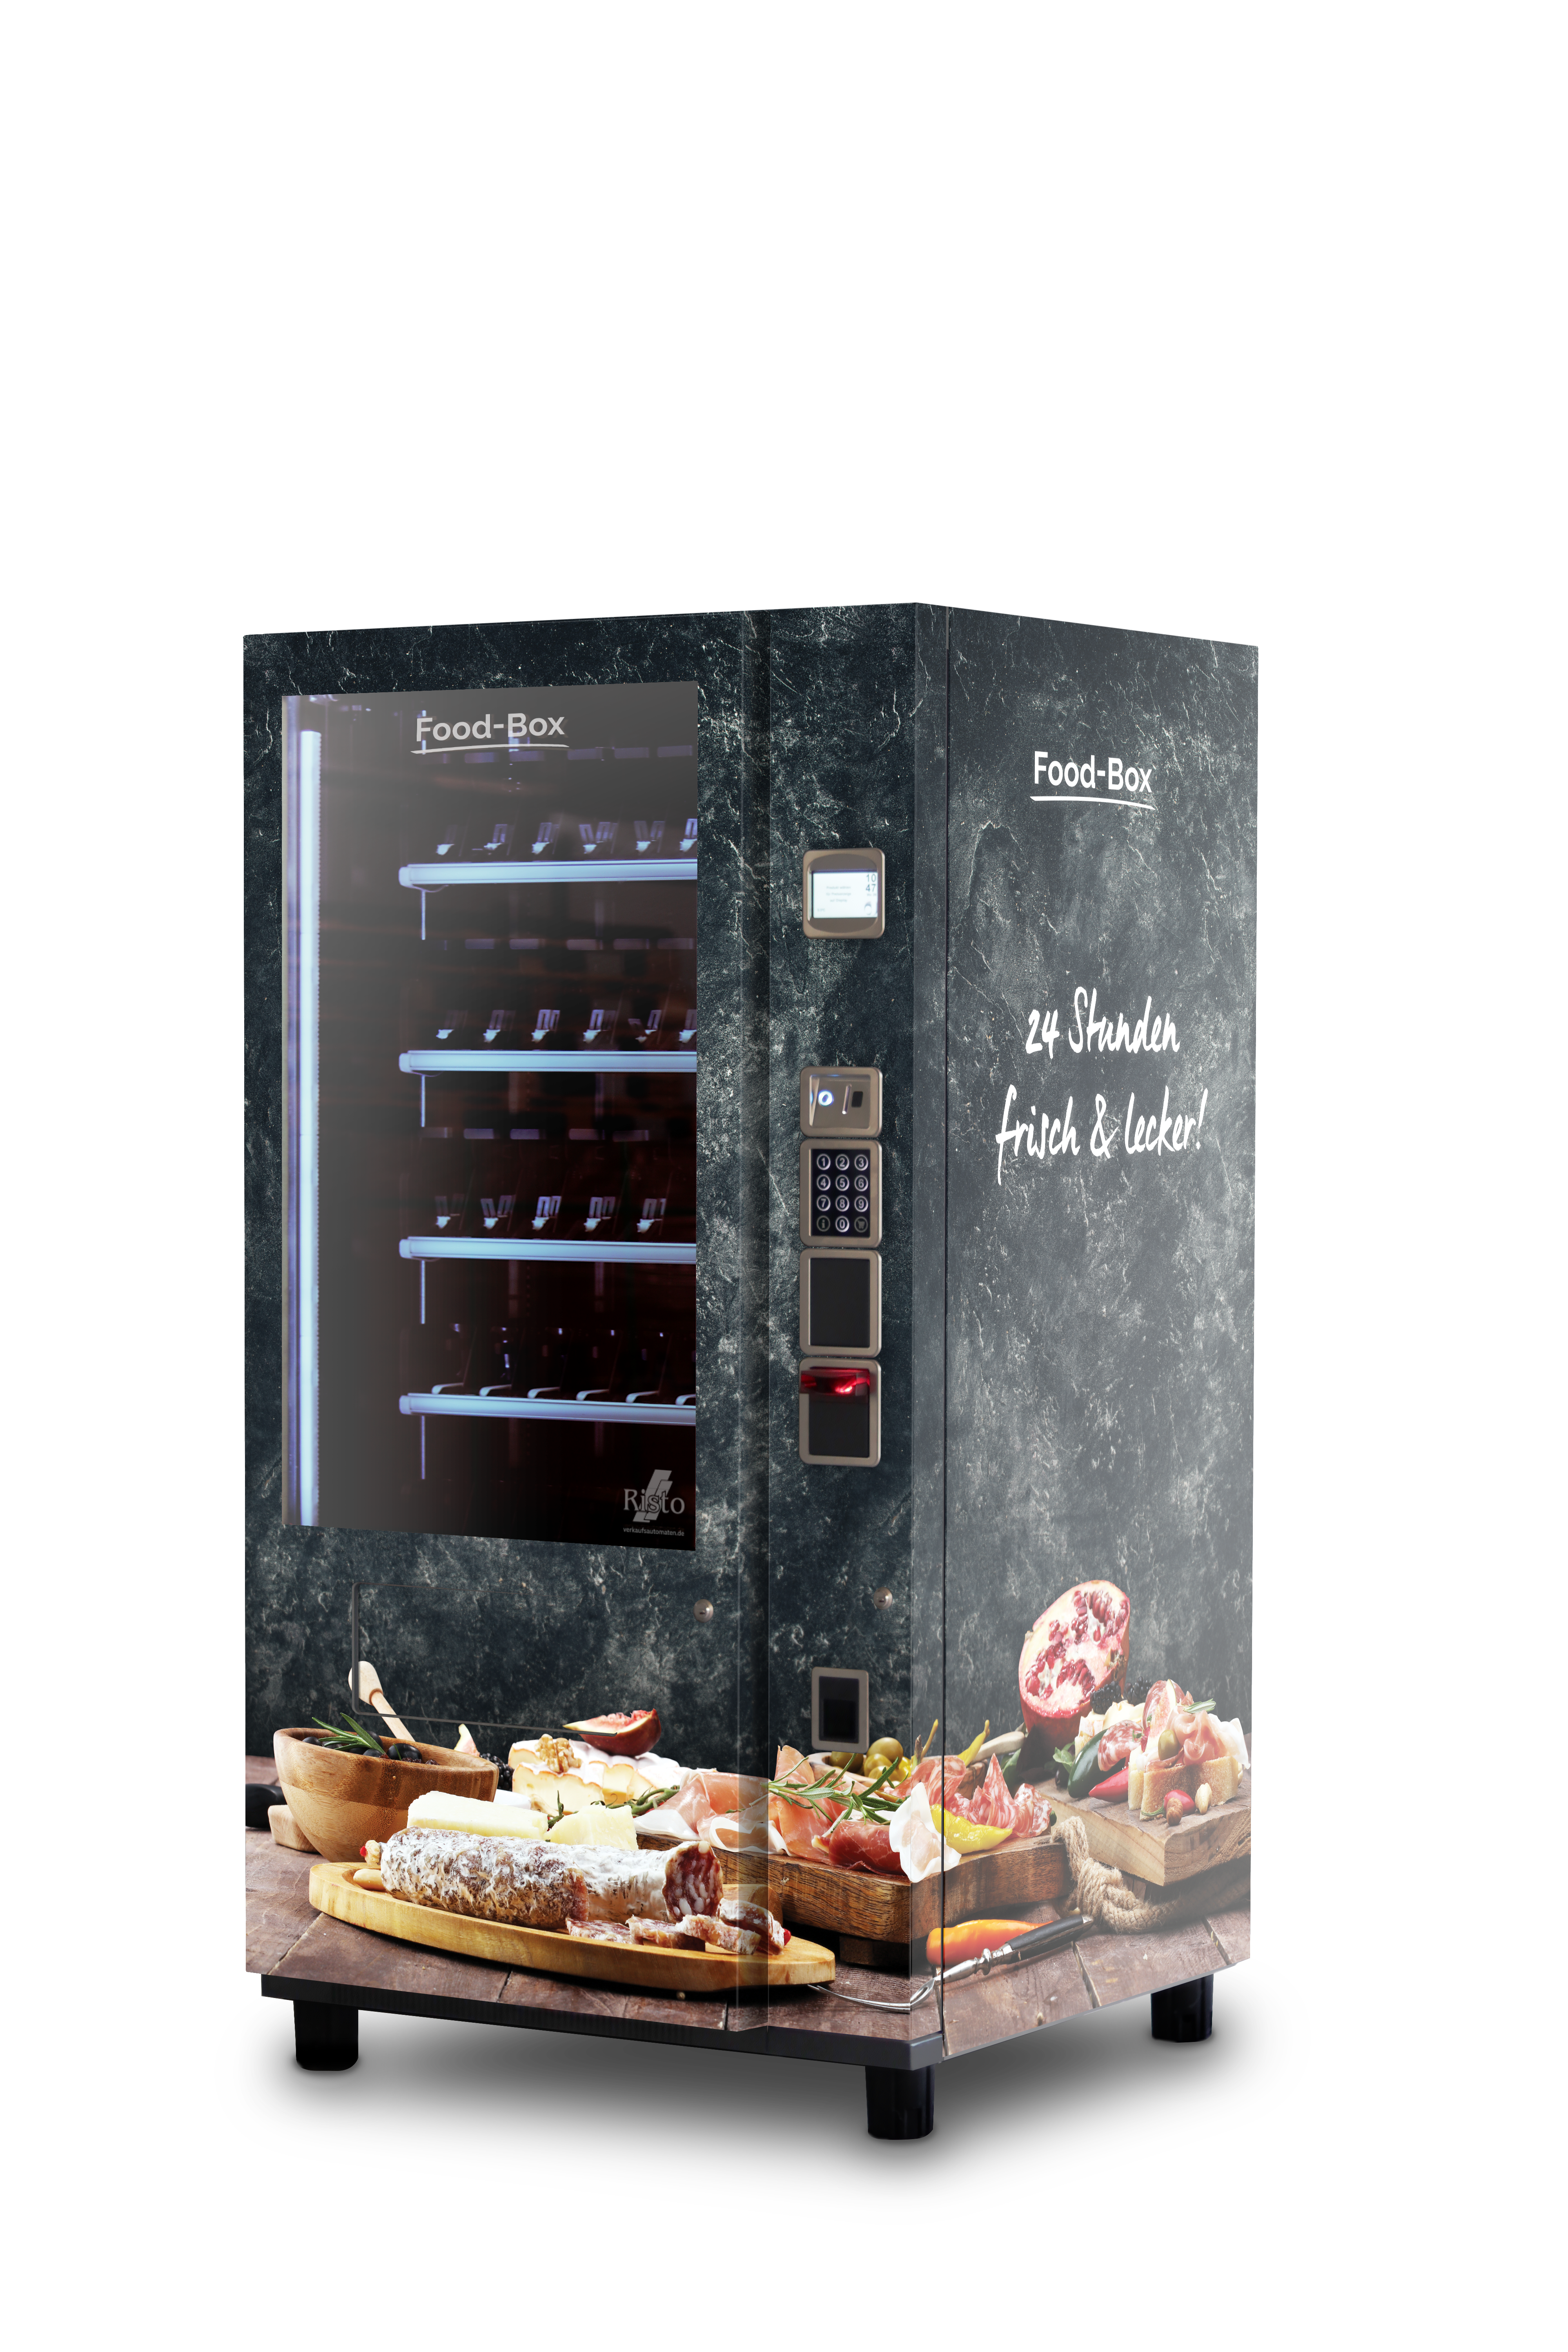 Verkaufsautomat für Lebensmittel Lebensmittelautomaten